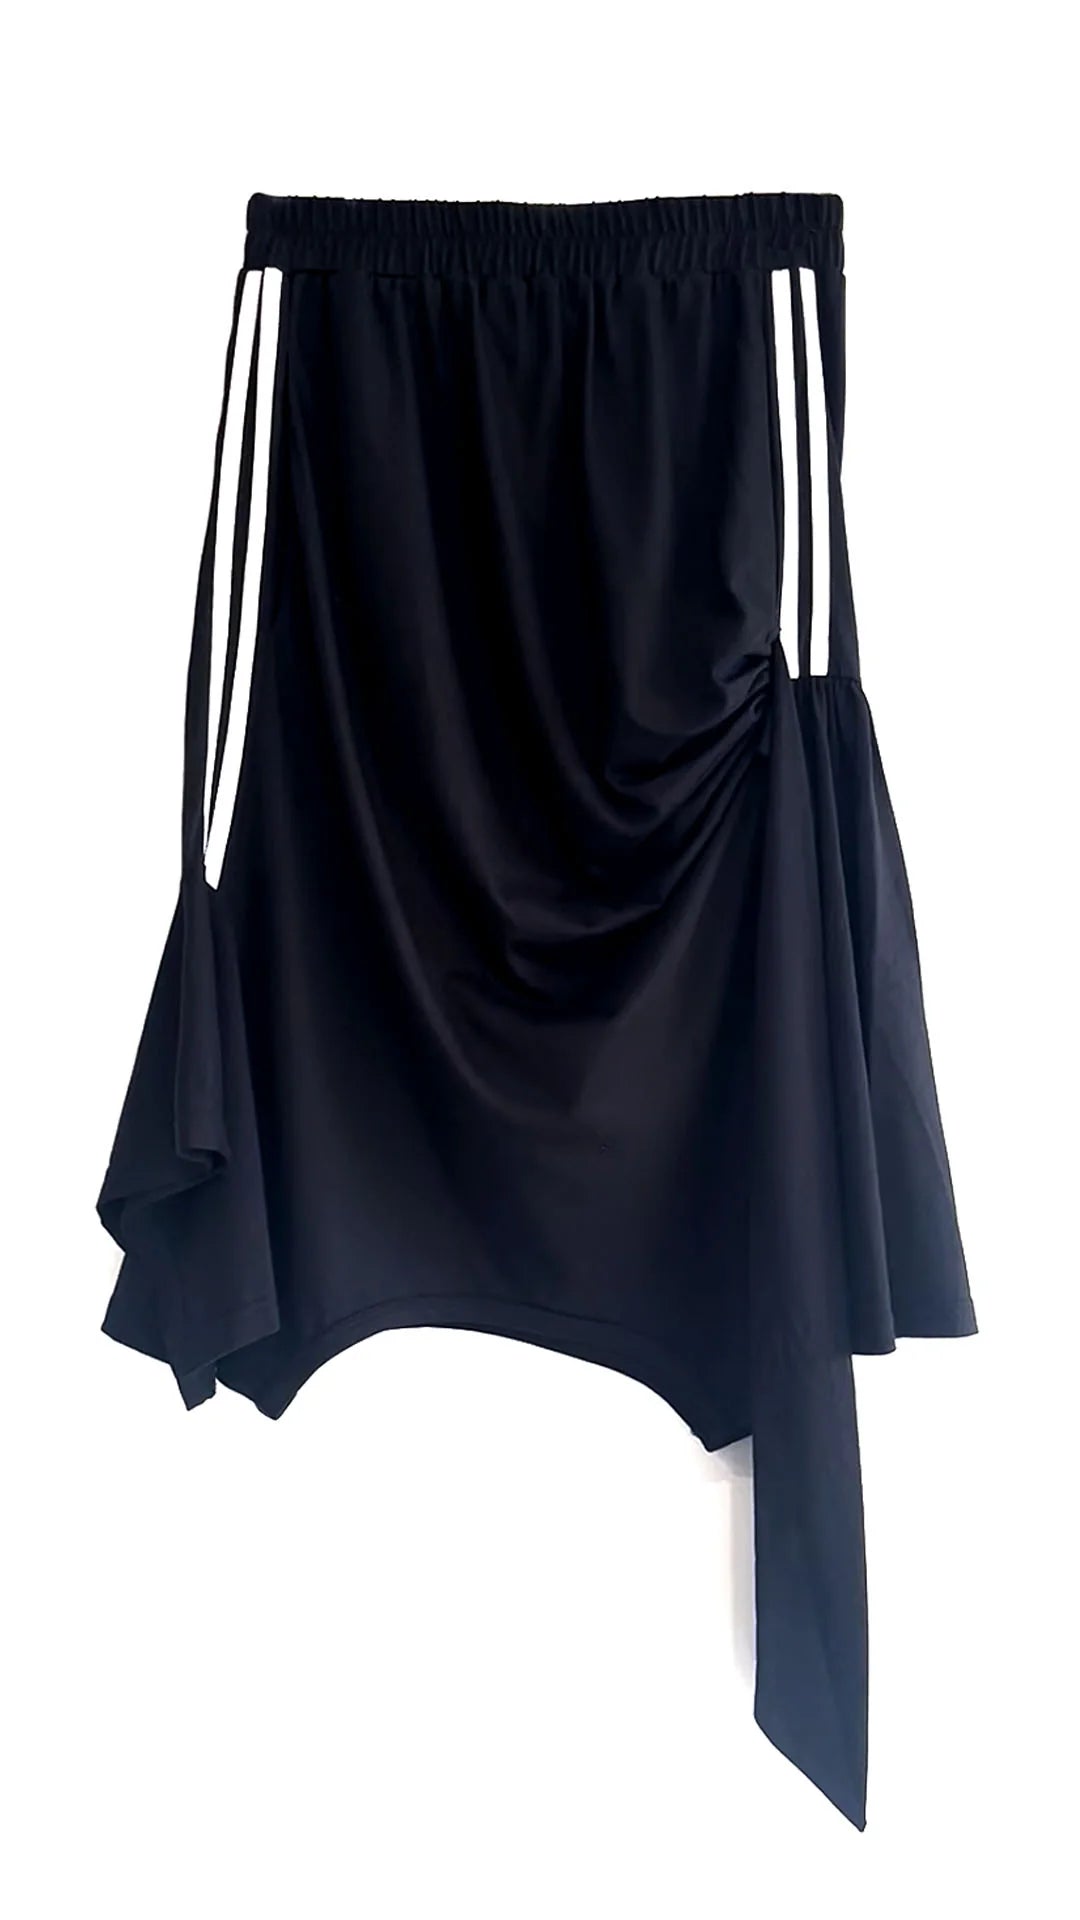 Tie-Up Skirt in Black